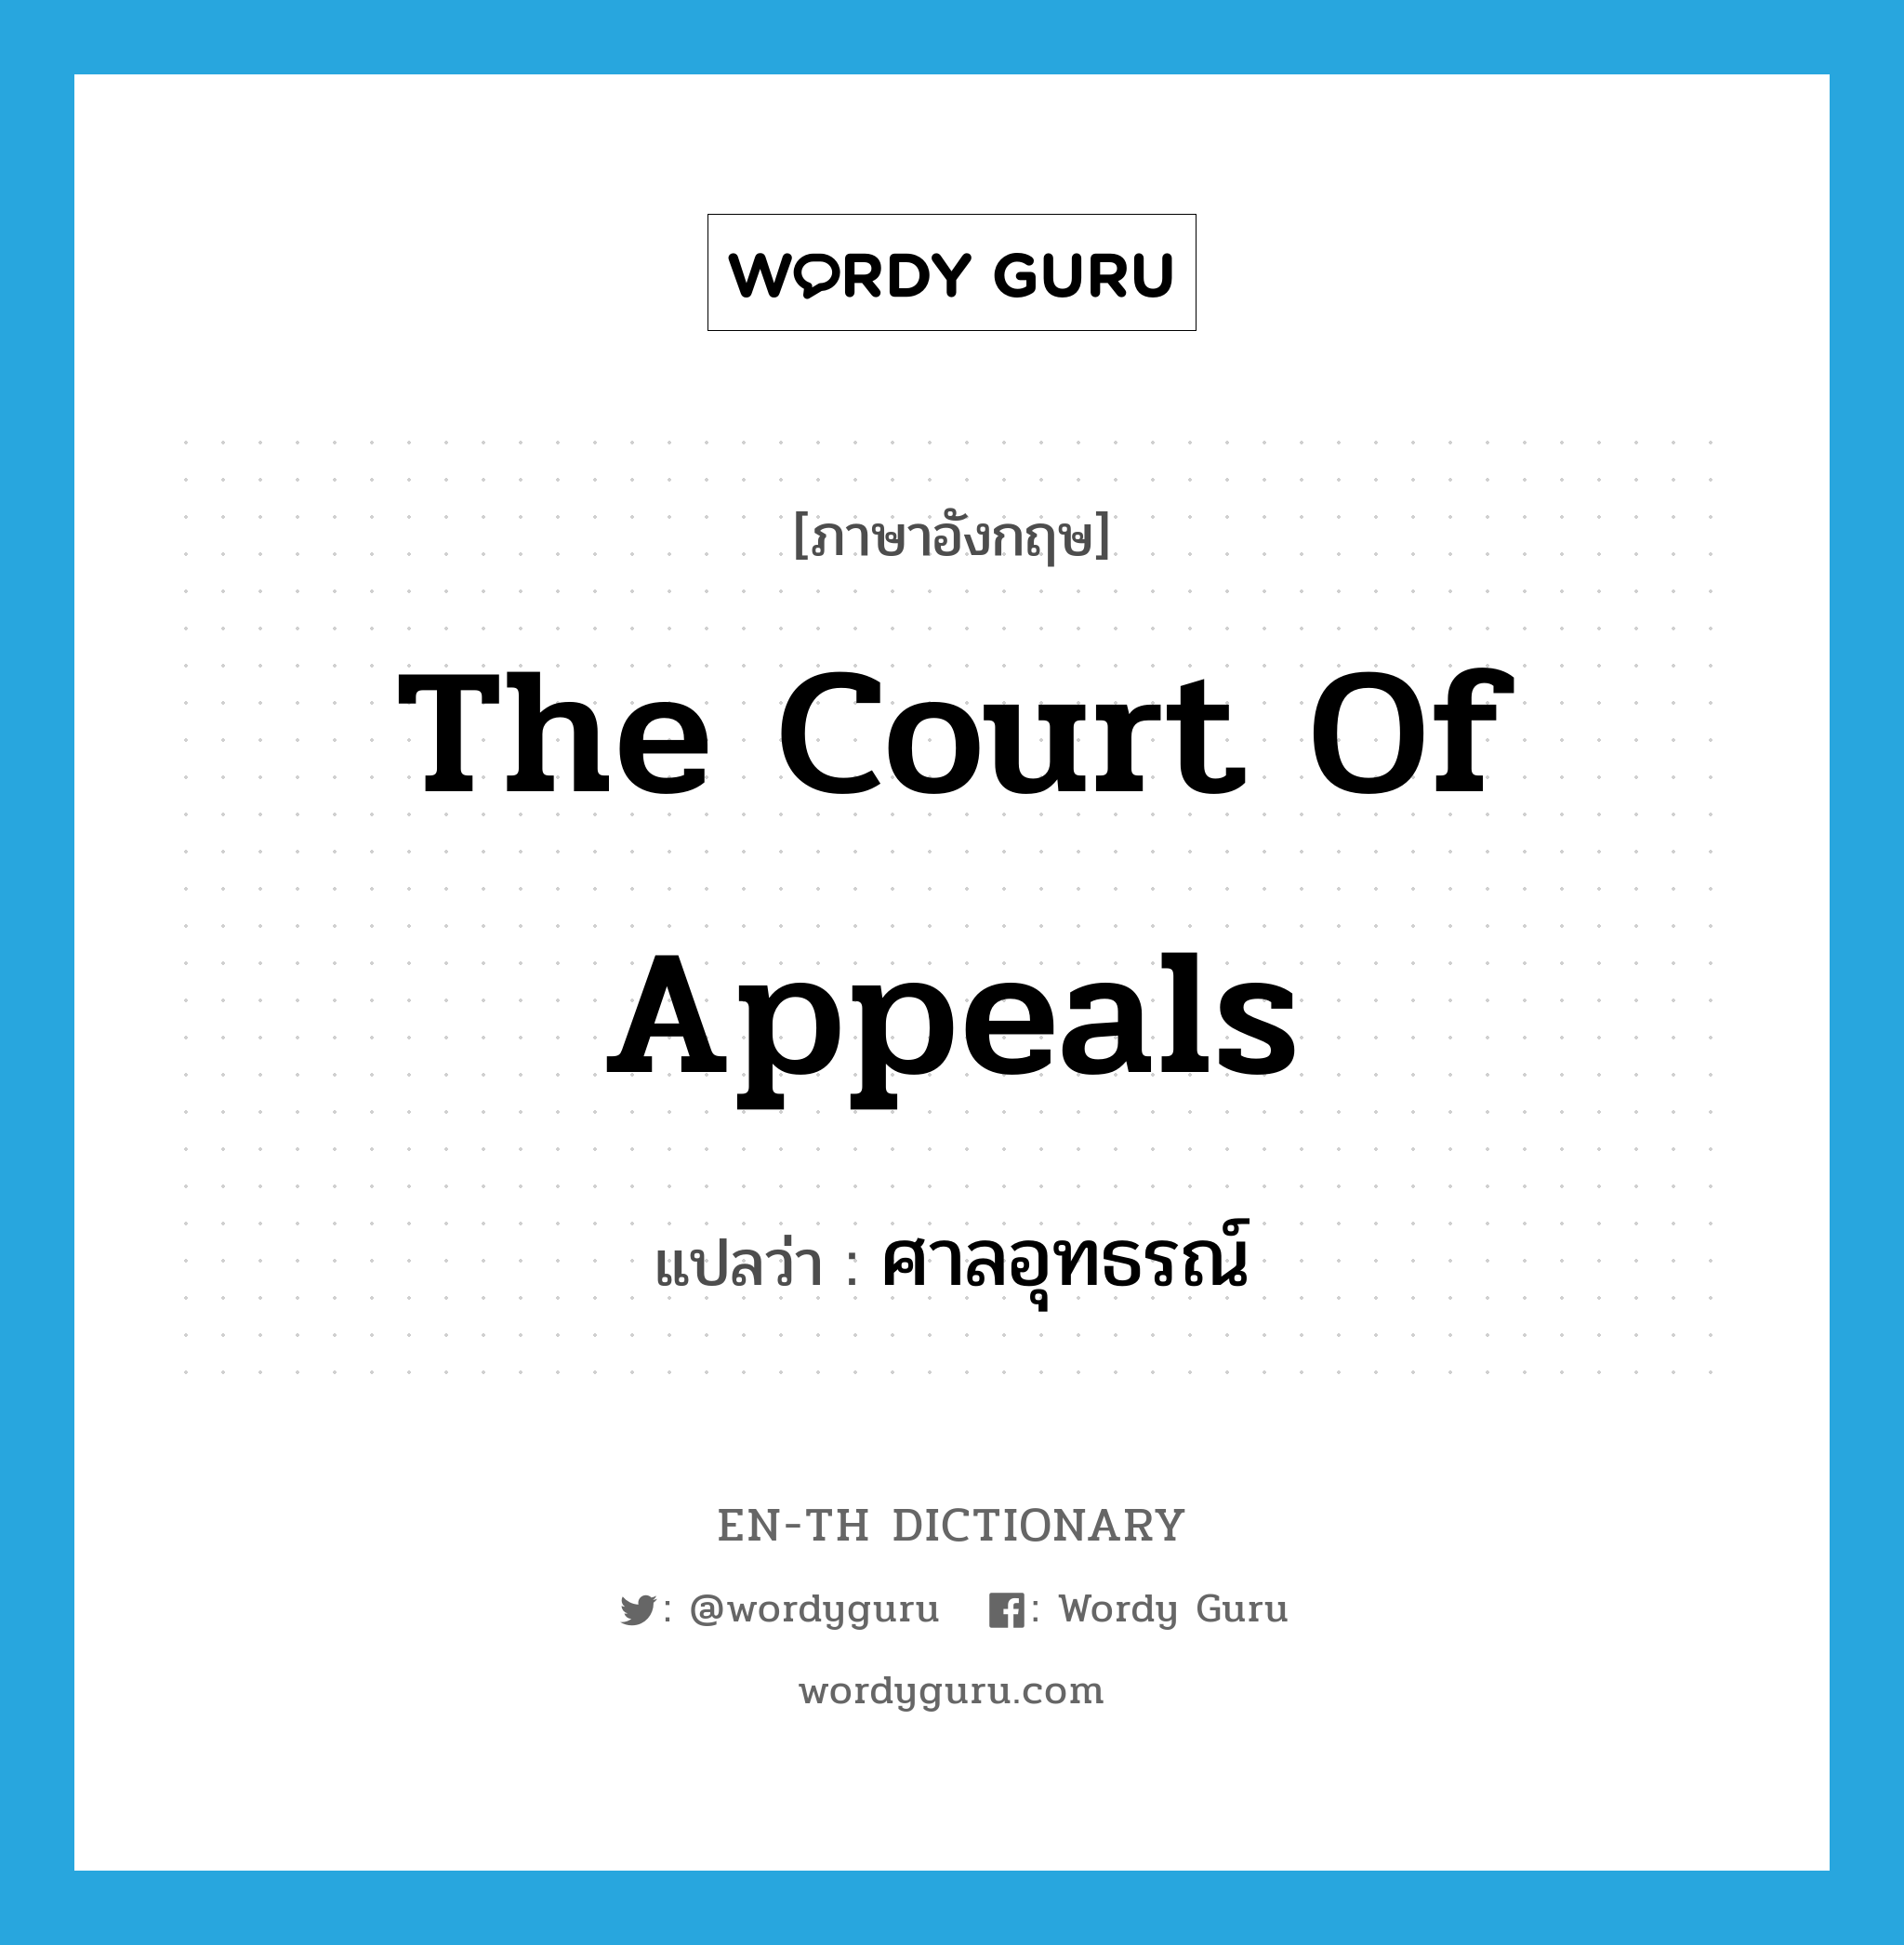 ศาลอุทธรณ์ ภาษาอังกฤษ?, คำศัพท์ภาษาอังกฤษ ศาลอุทธรณ์ แปลว่า The Court of Appeals ประเภท N หมวด N